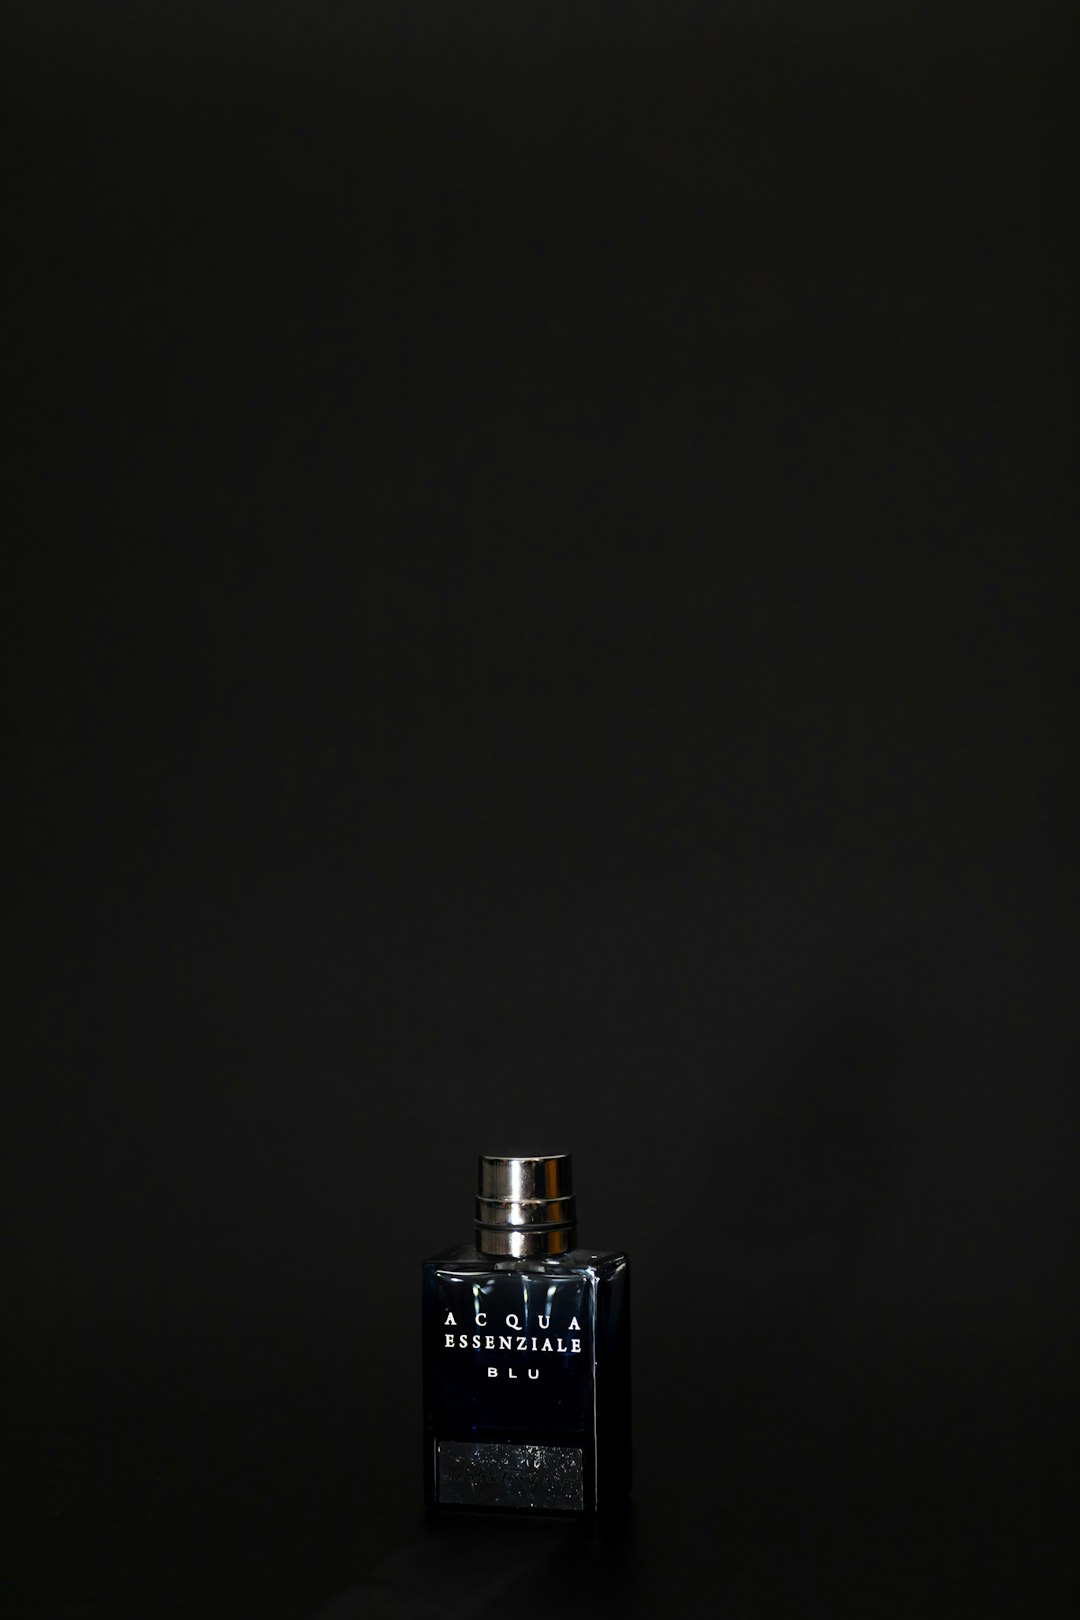 Black Bottle Pictures | Download Free Images on Unsplash